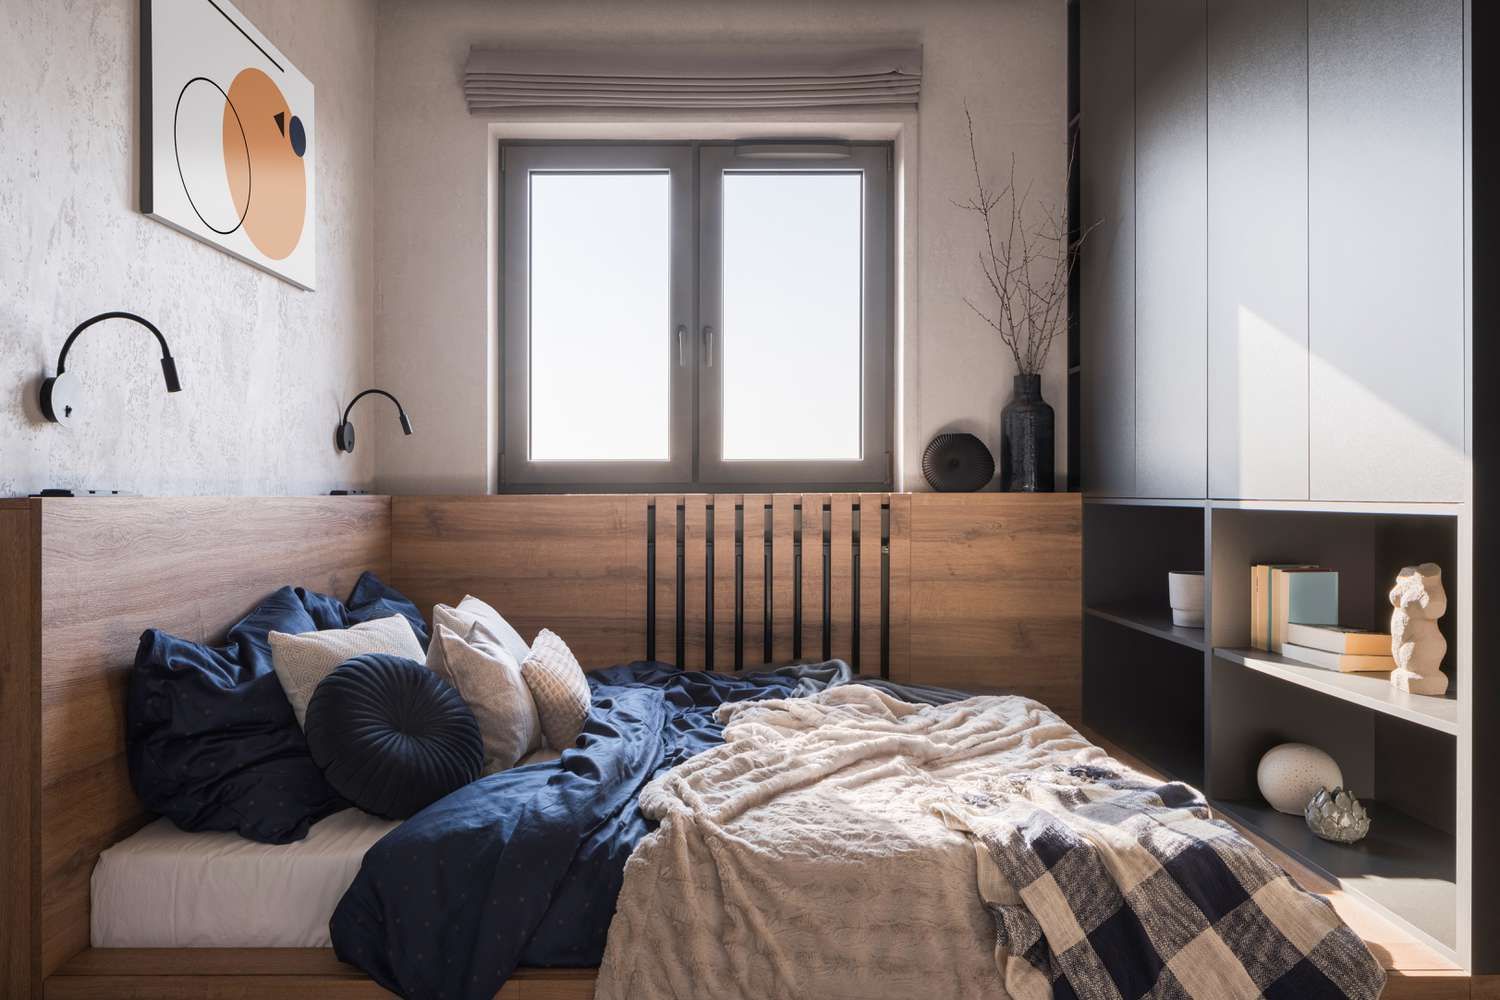 Mẫu thiết kế nội thất phòng ngủ nhỏ đẹp, hiện đại đón đầu xu hướng hiện nay